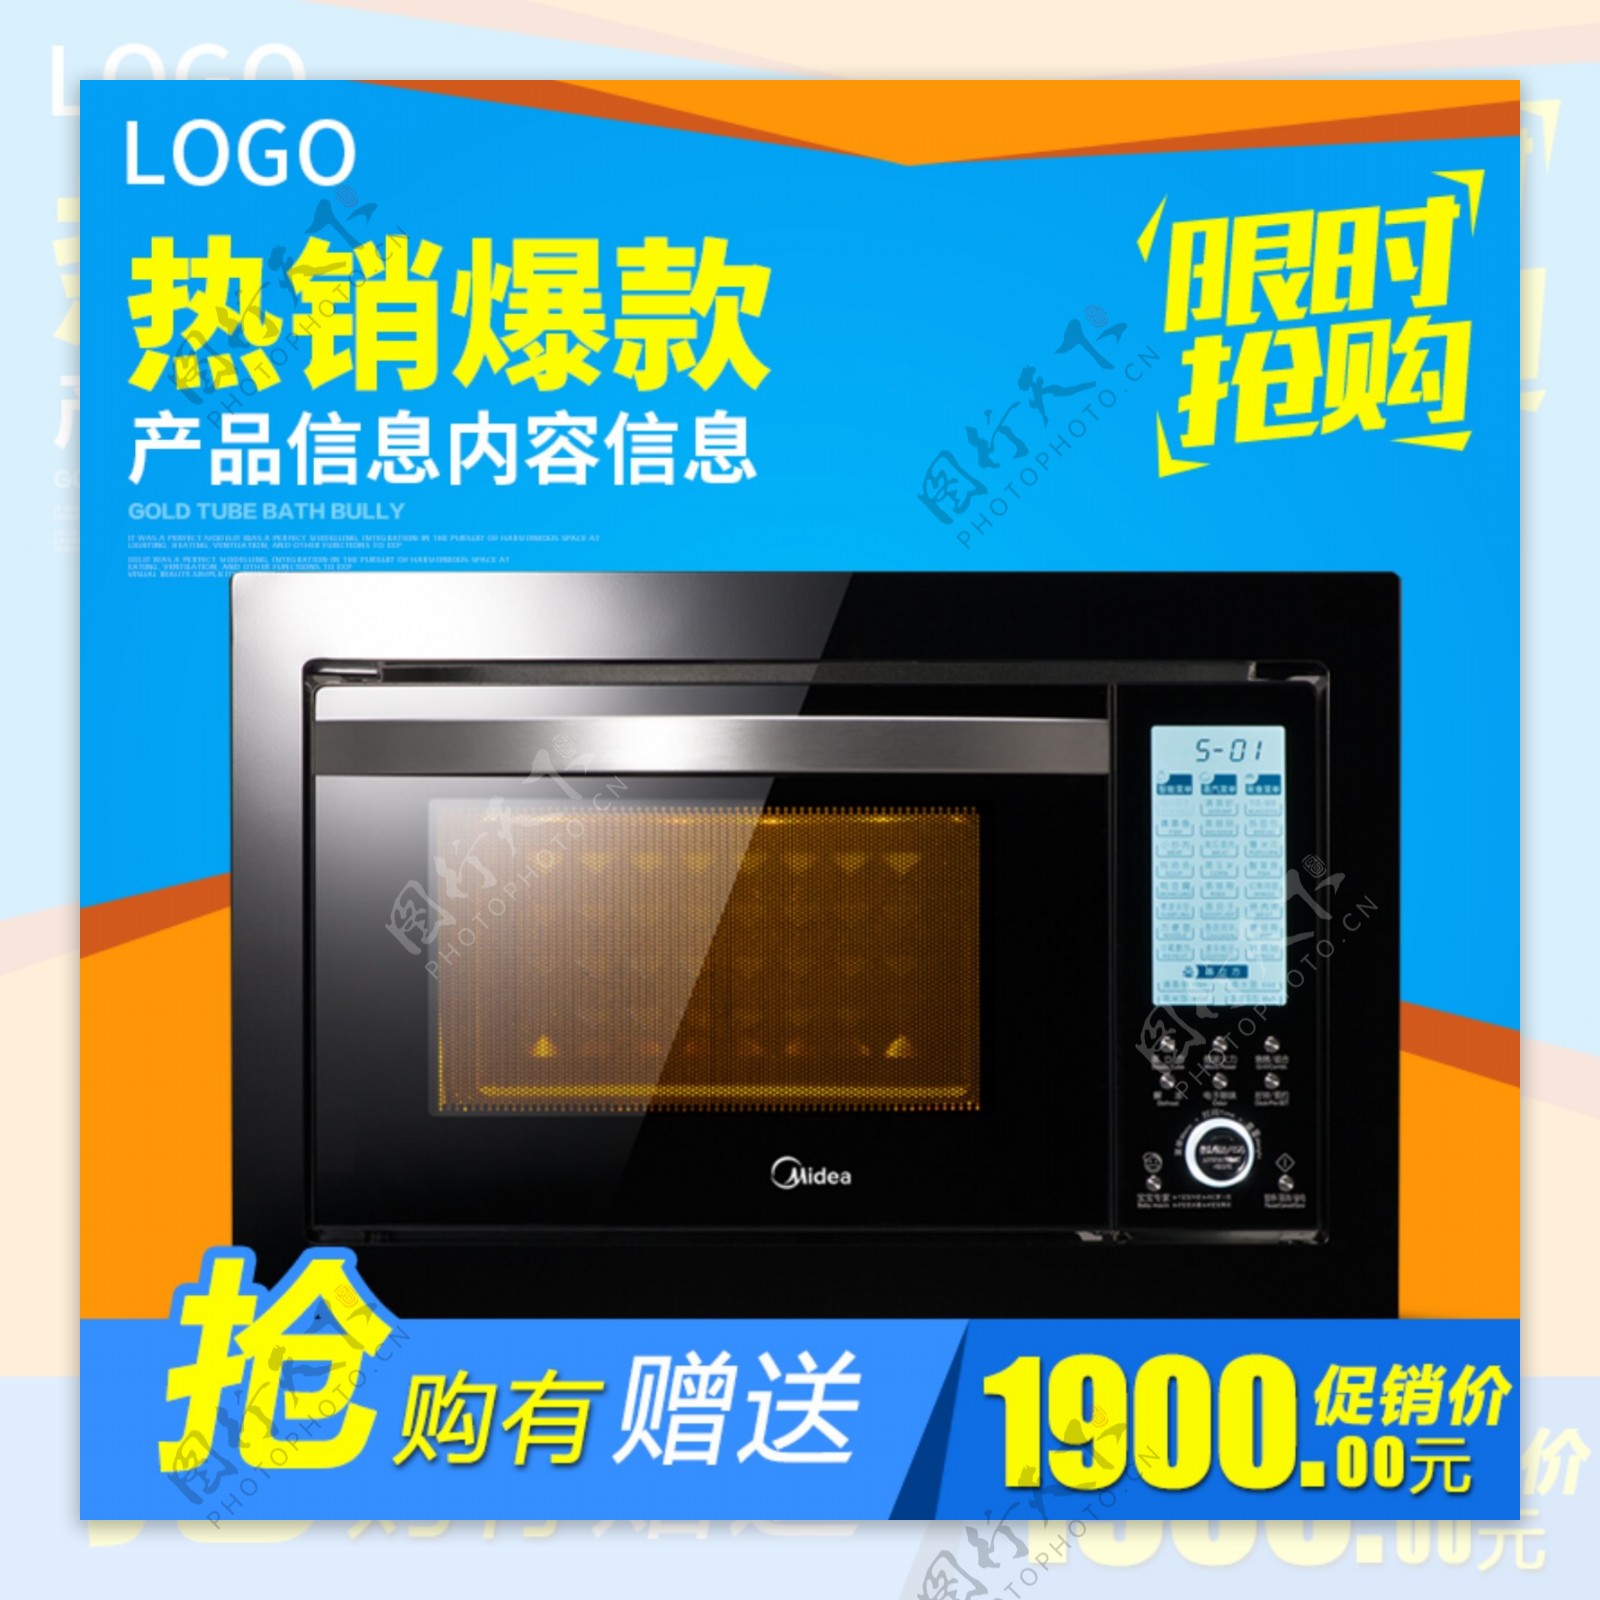 数码家电烤箱主图设计模板